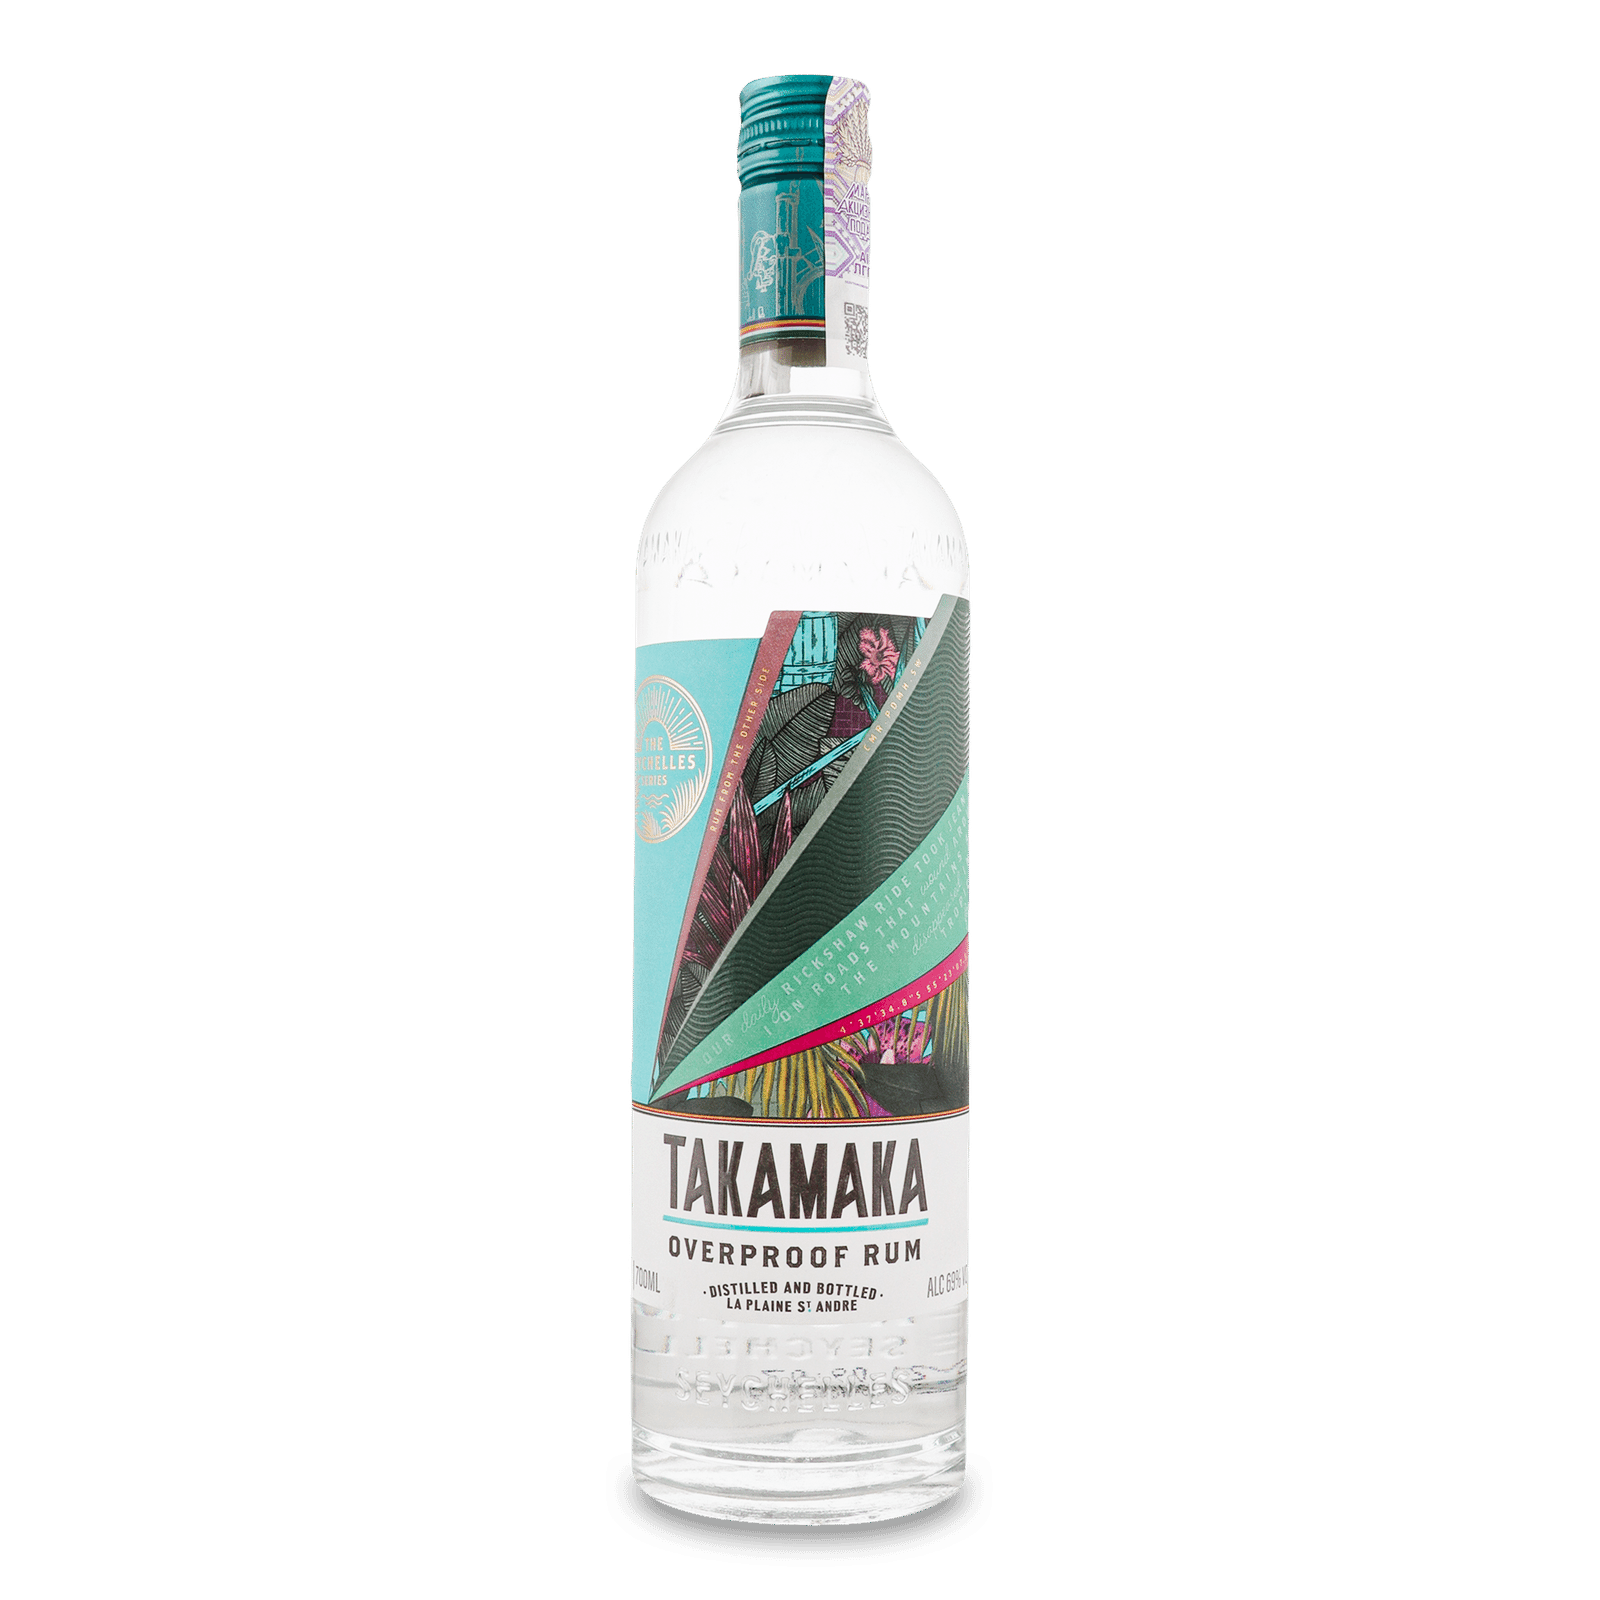 Ром Takamaka white overproof 69 rum - 1